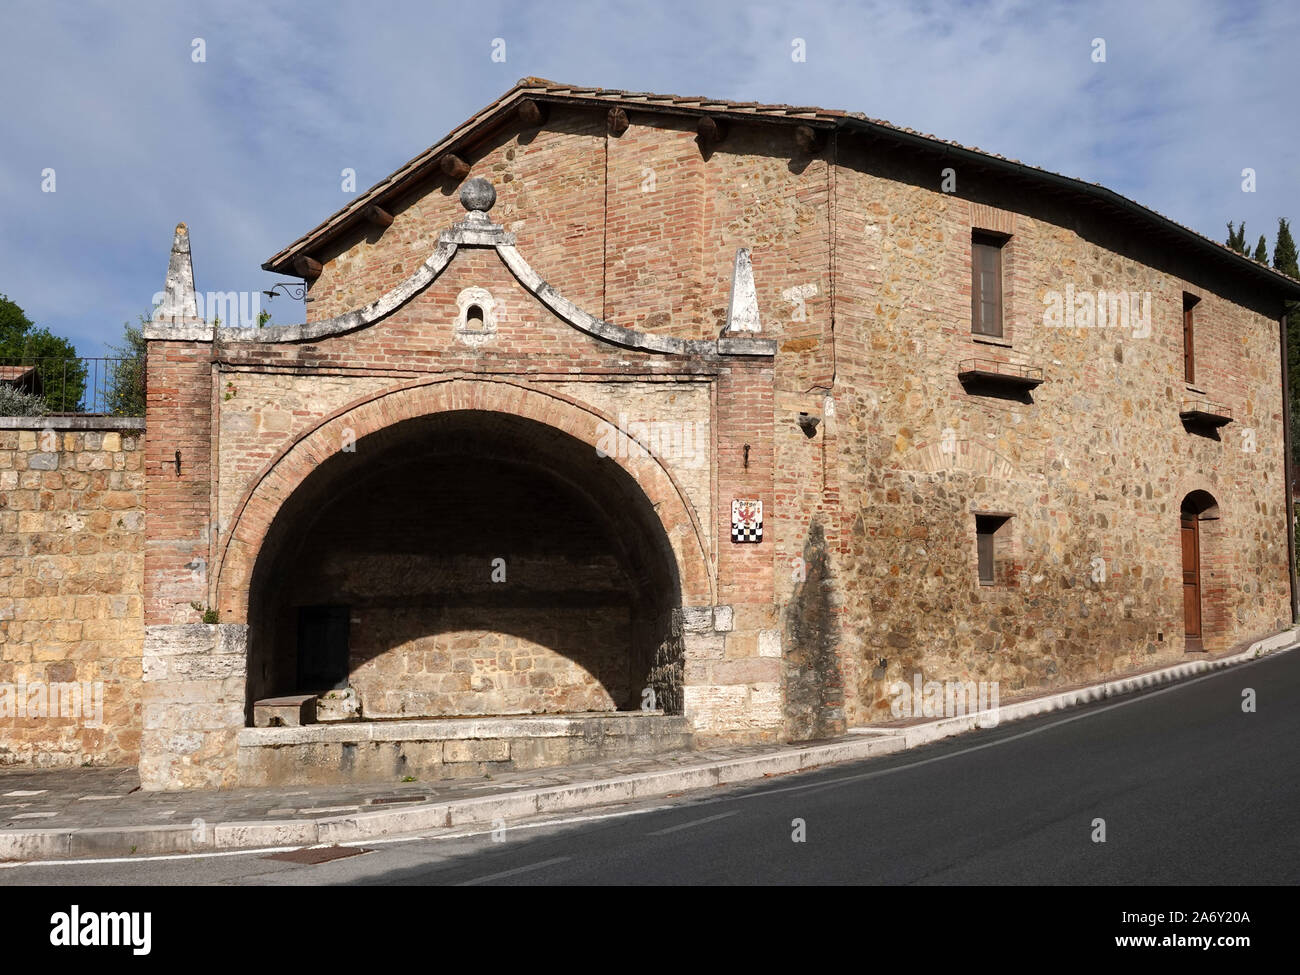 Italy, Tuscany, San Quirico d'Orcia washhouse Stock Photo